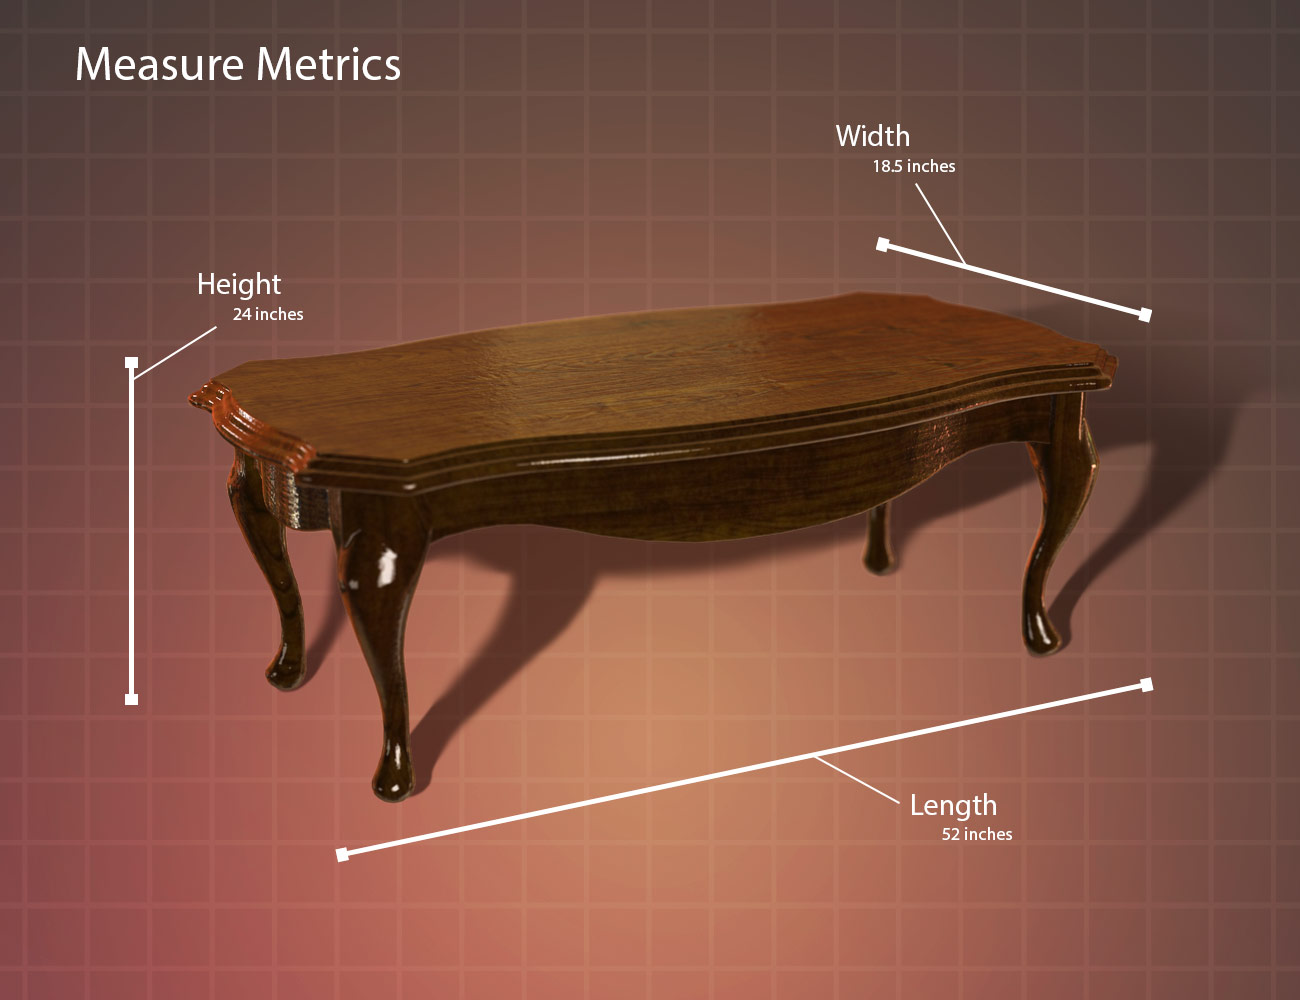 daz studio measure metrics